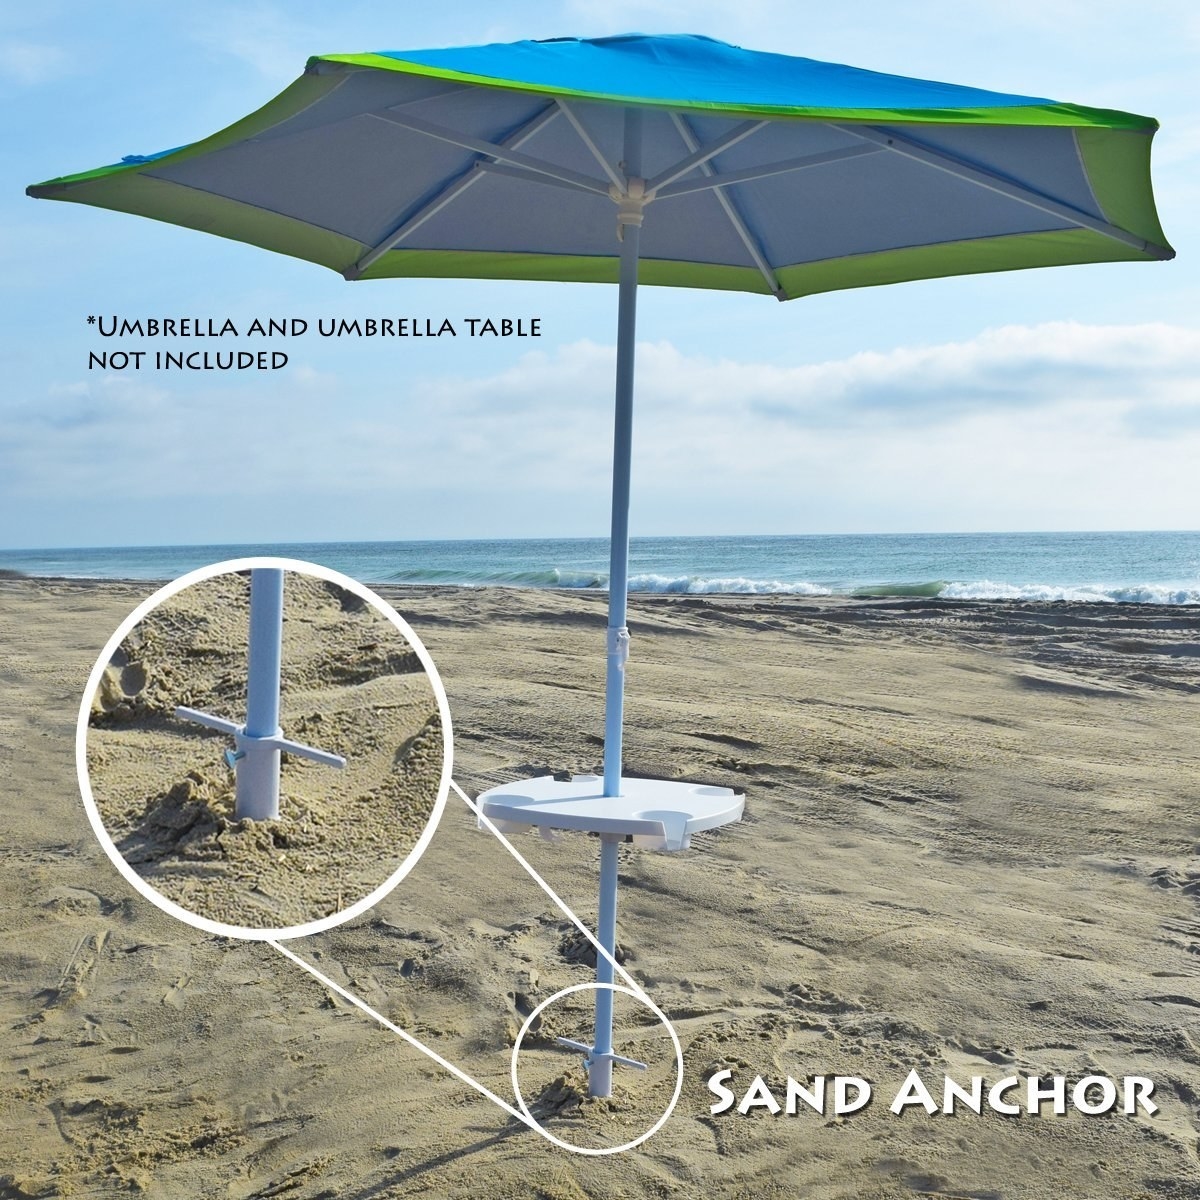 Земля зонтика. Подставка для пляжного зонтика. Зонт для пляжа. Зонтик на пляже. Зонт от солнца пляжный.